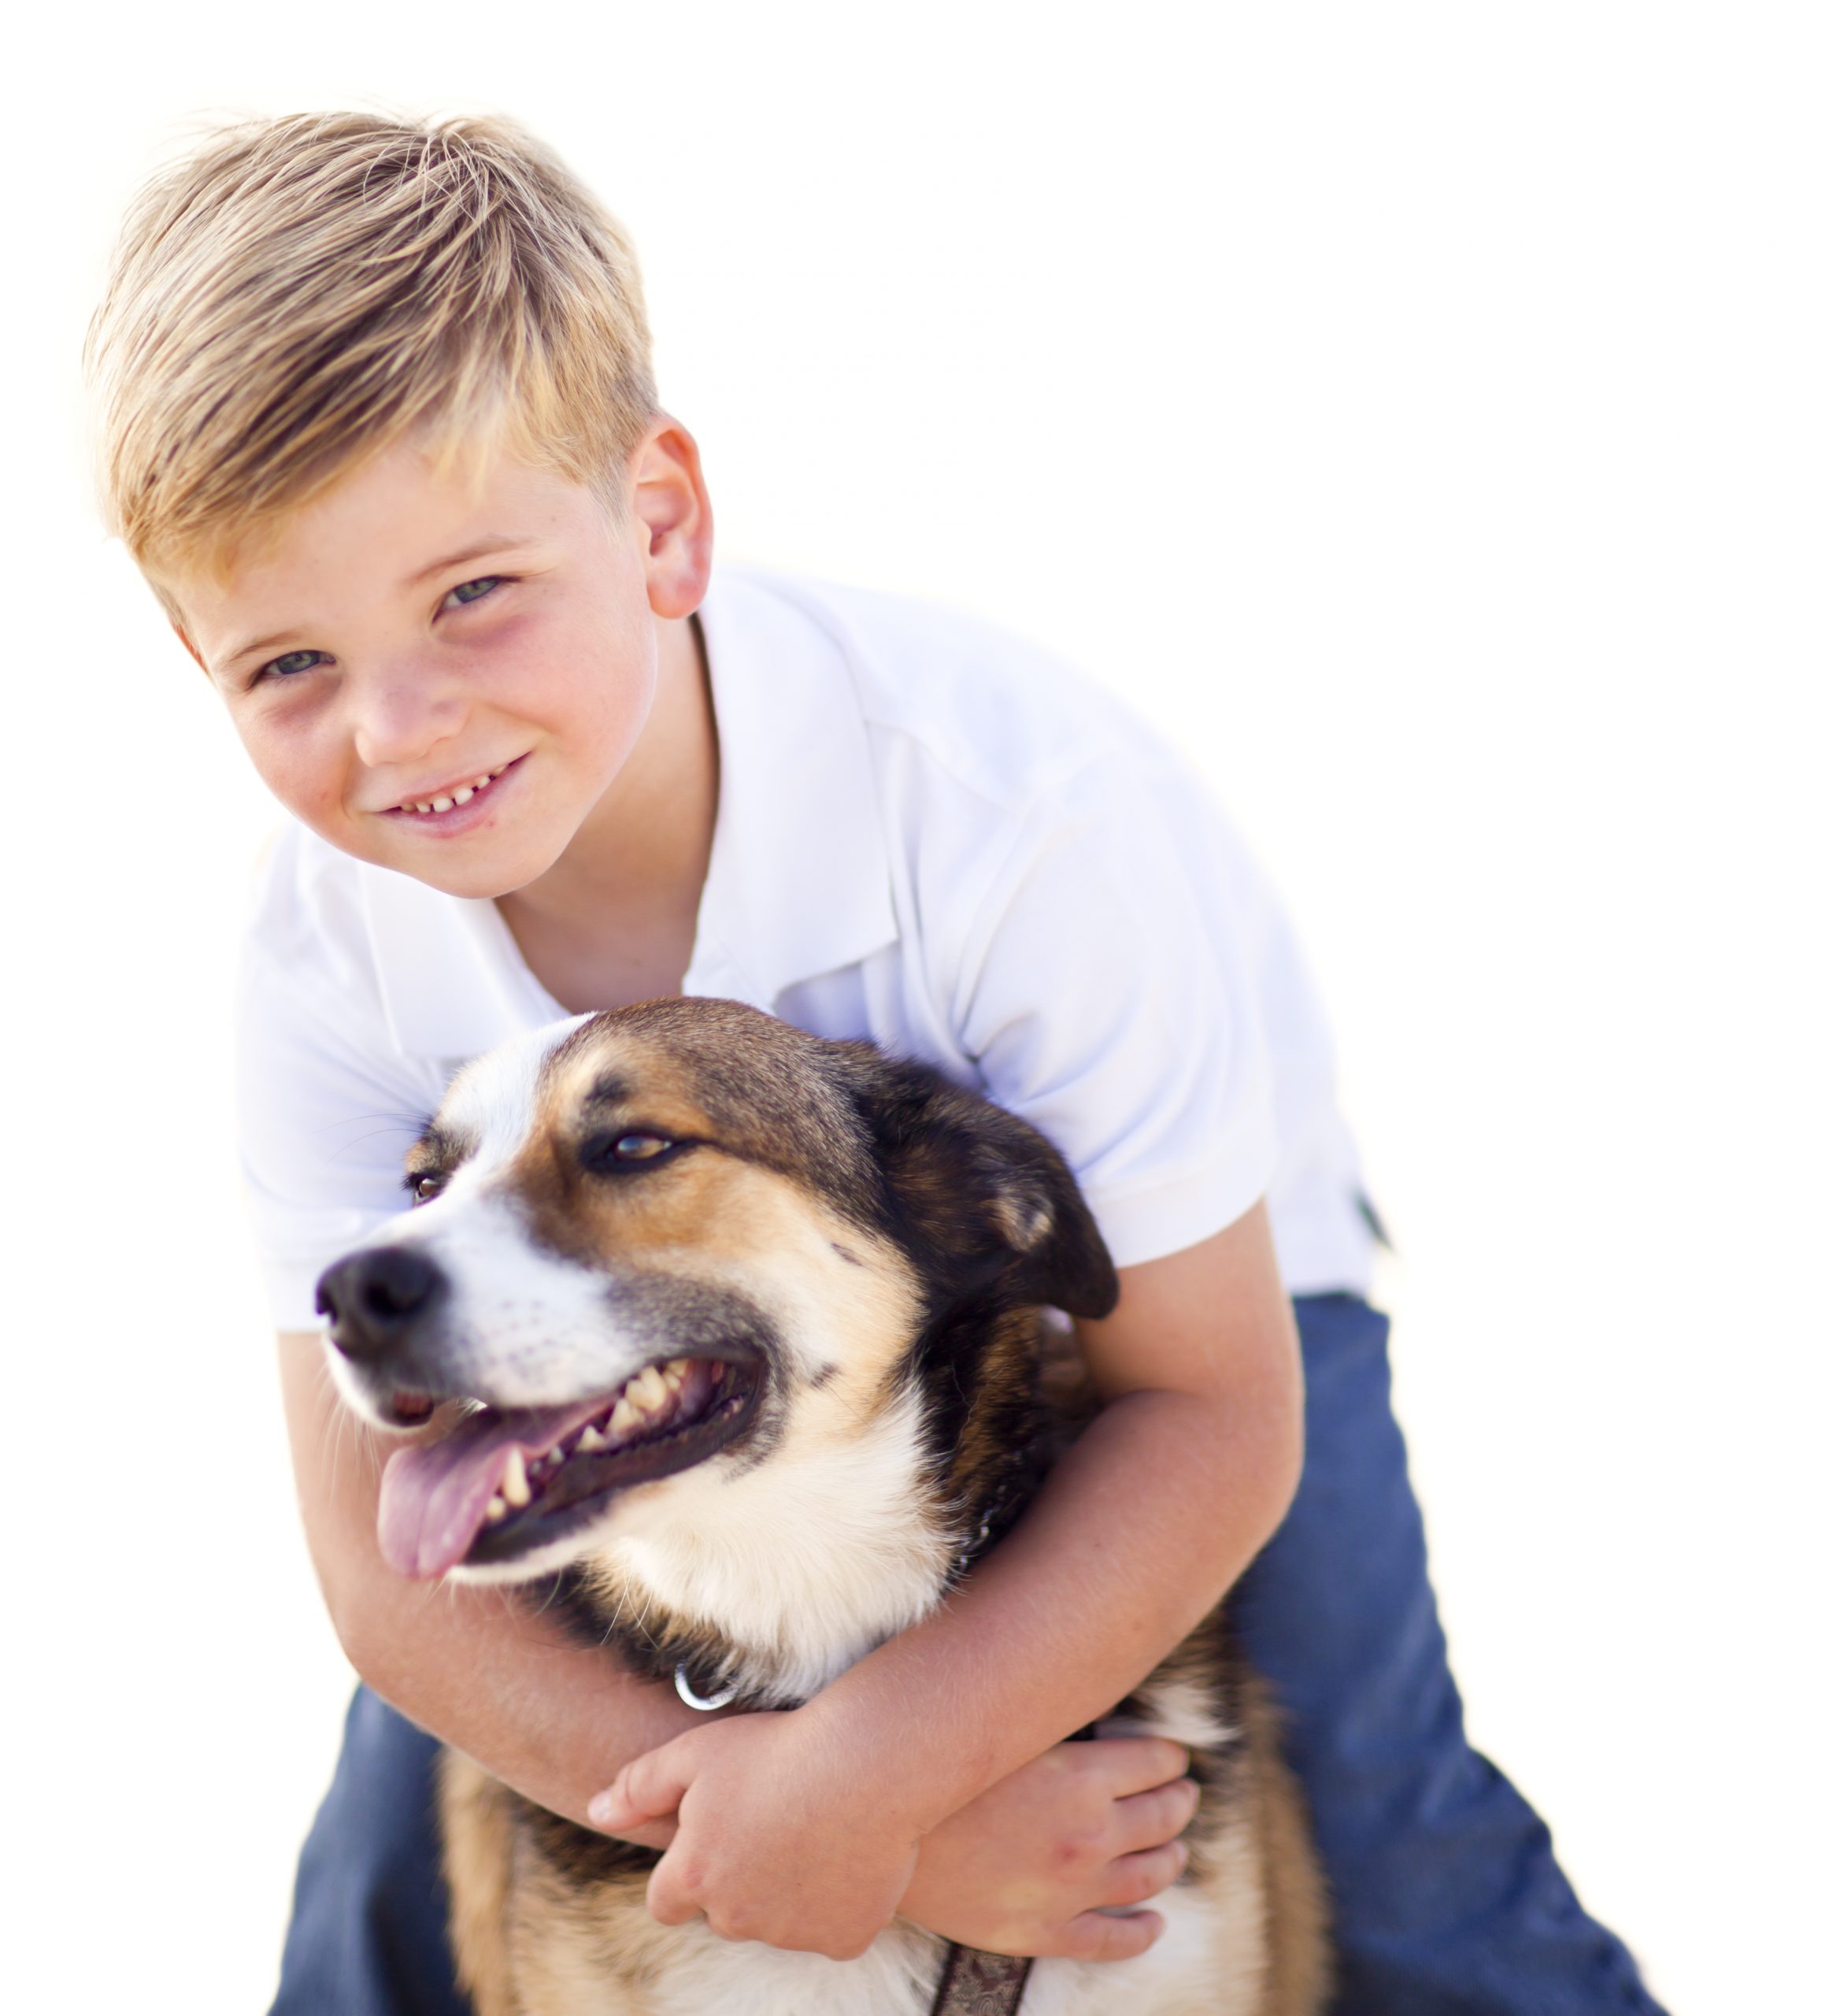 Pets trazem benefícios ao desenvolvimento das crianças | Jornal da Orla